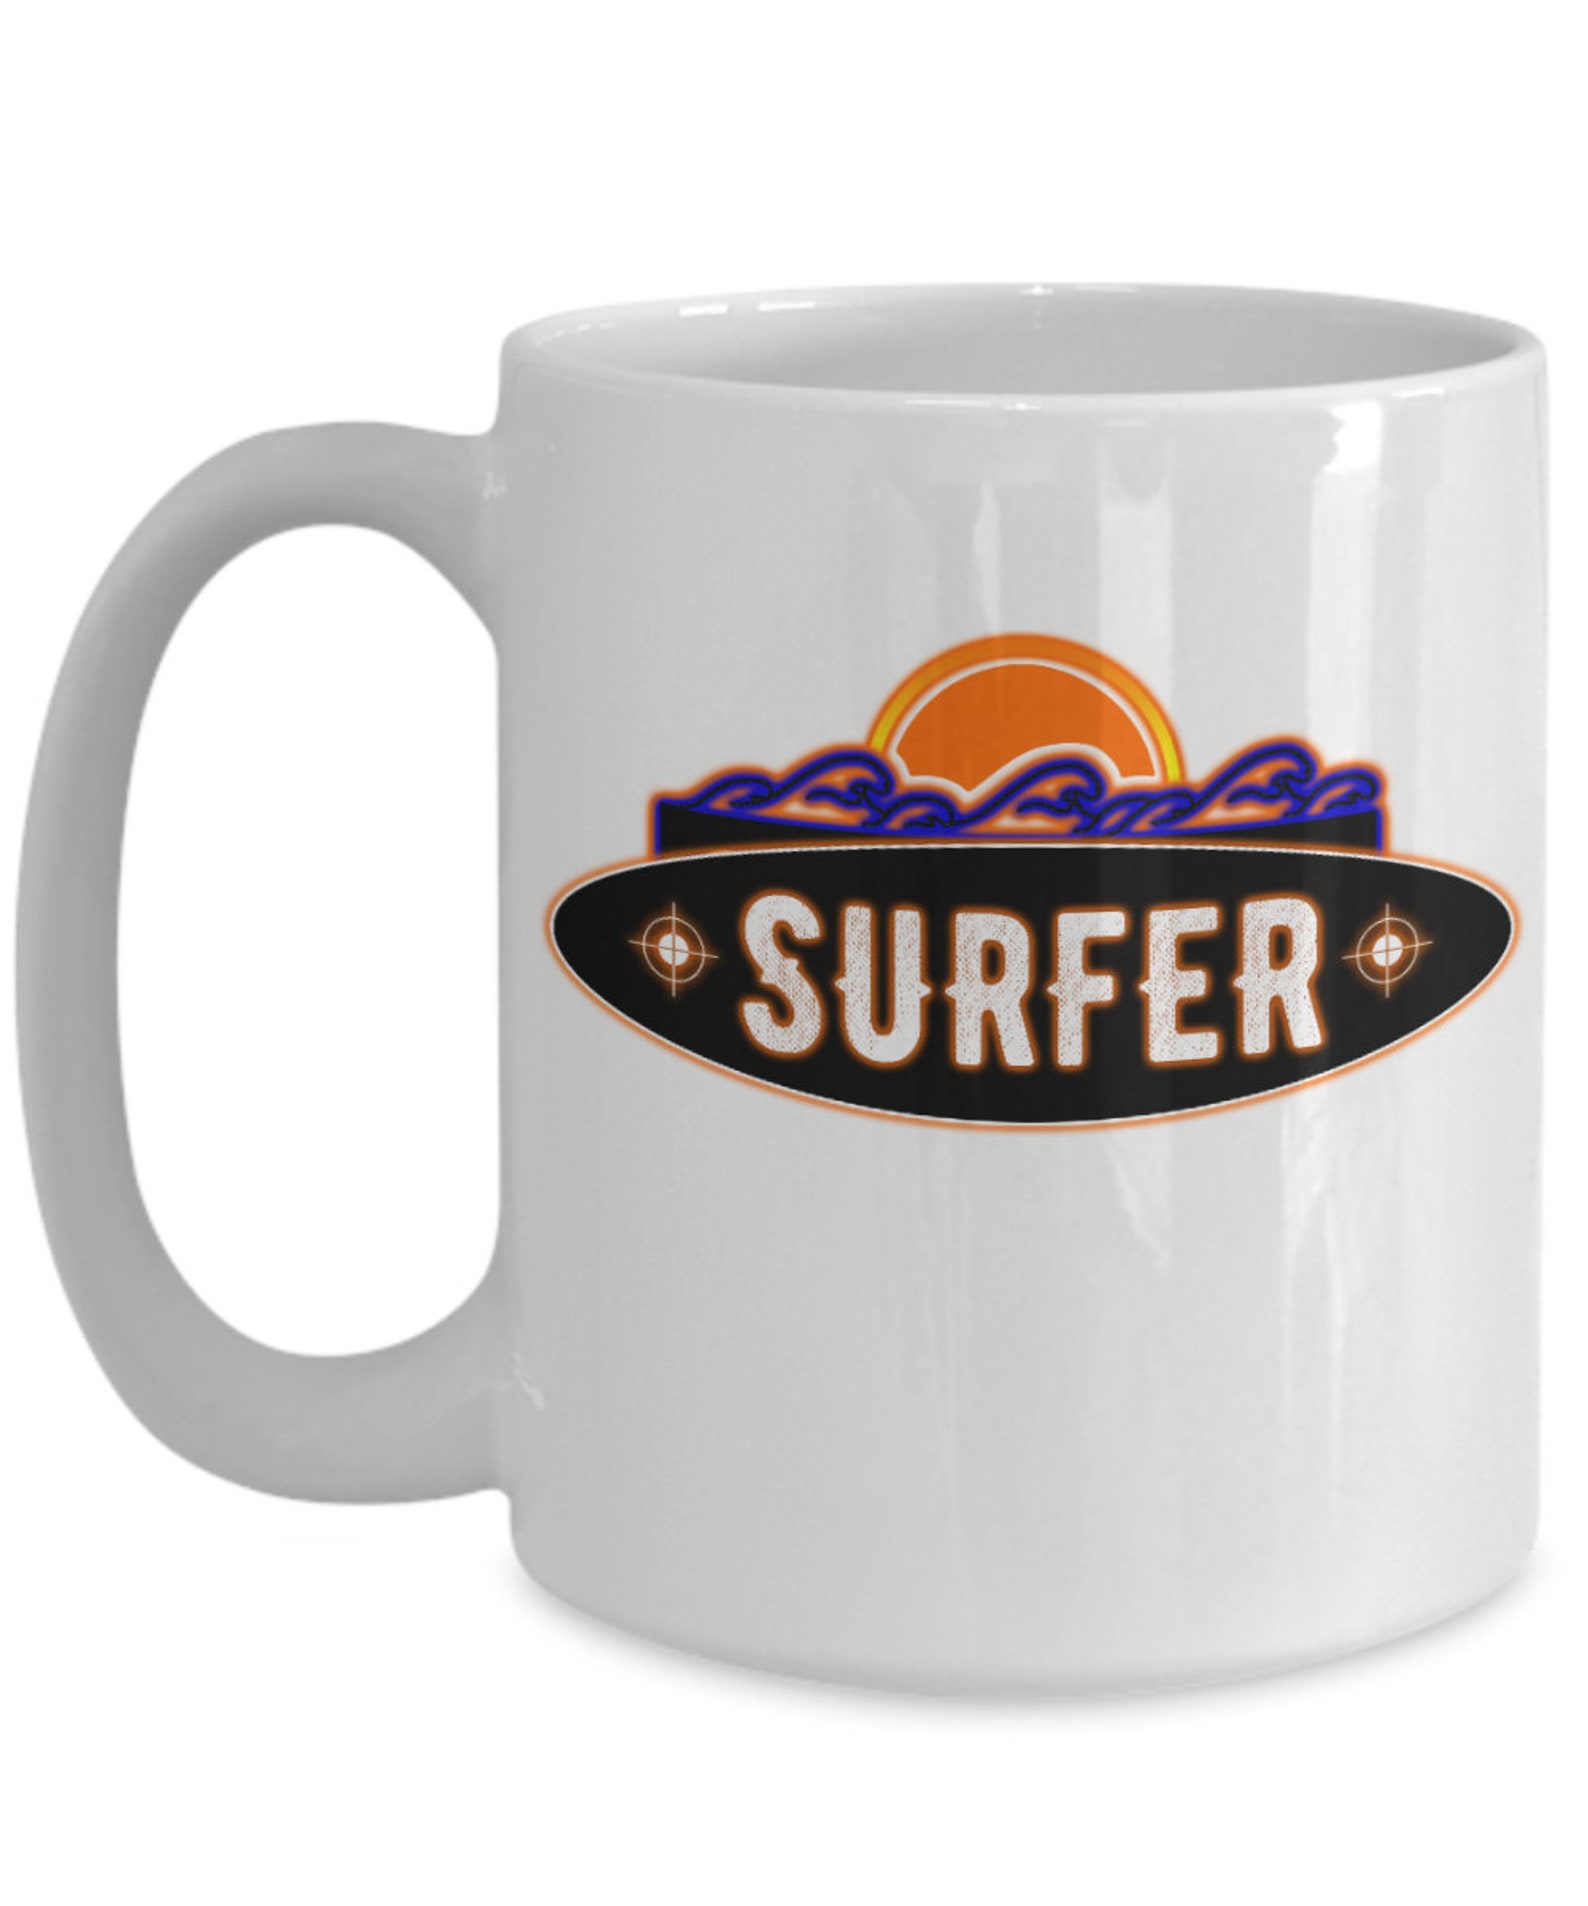 Surfer coffee mug | Etsy